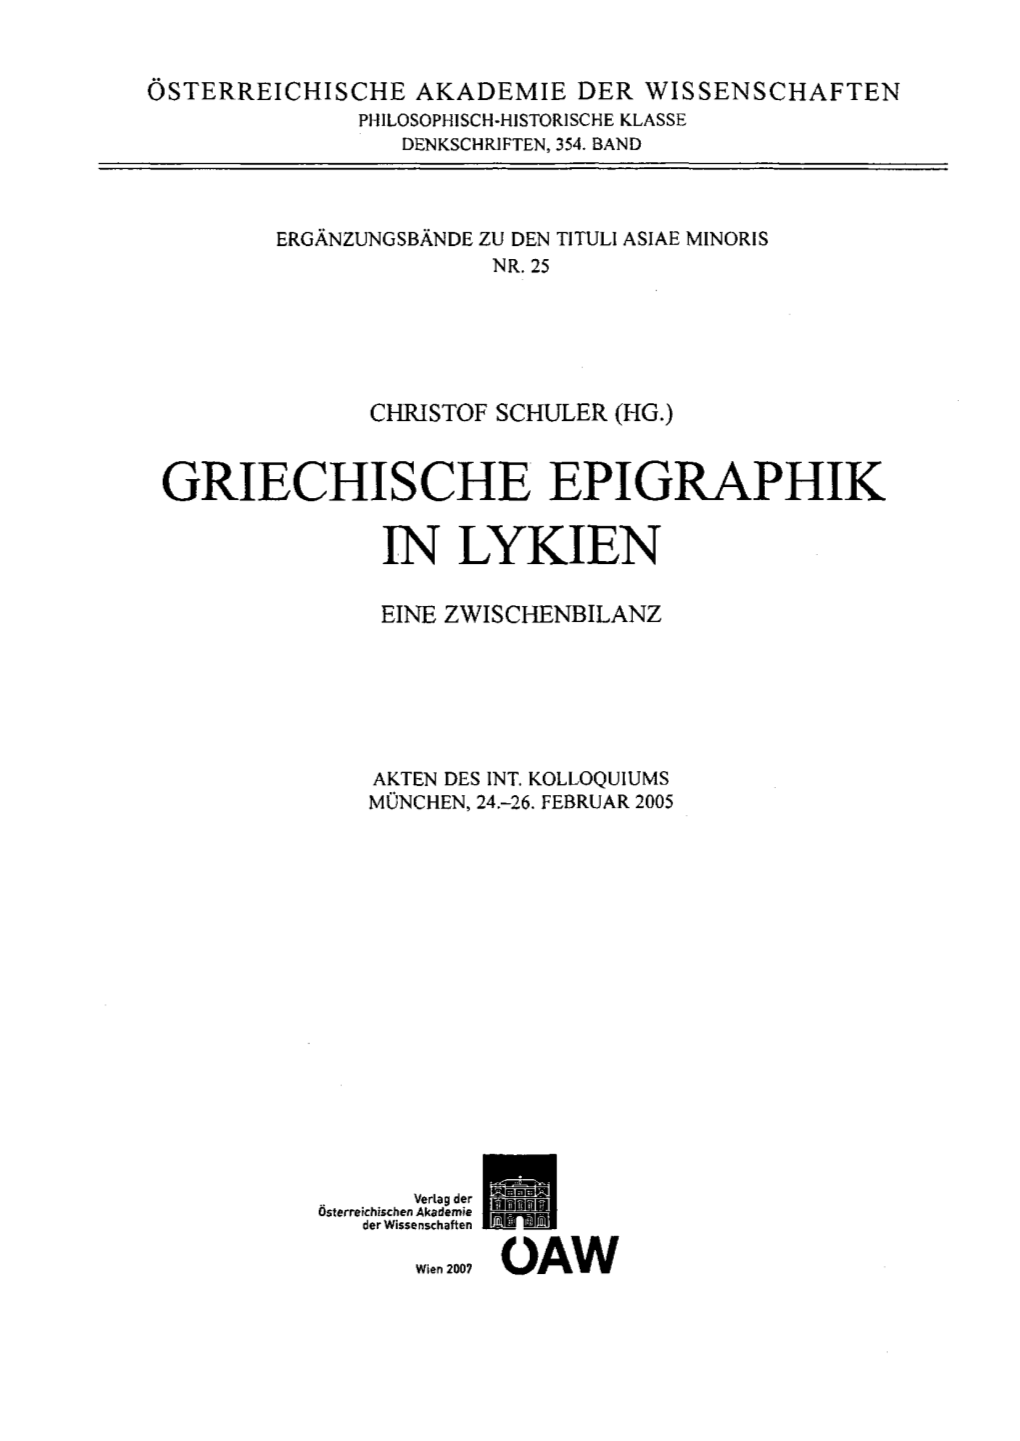 Griechische Epigraphik in Lykien